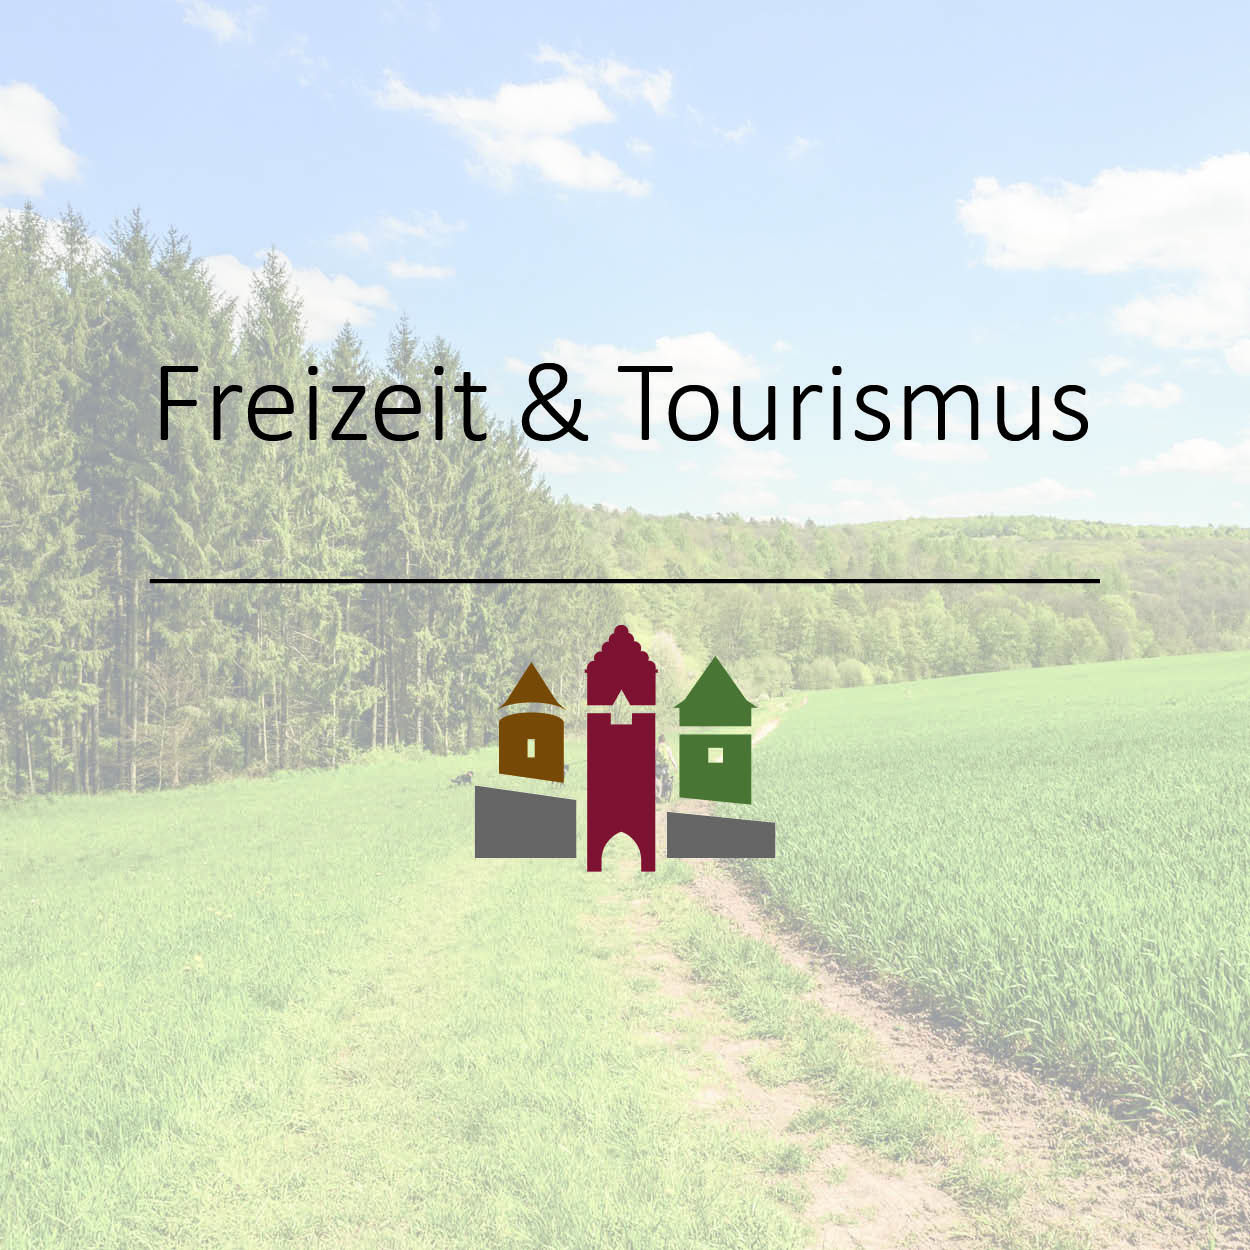 Freizeit & Tourismus3.jpg